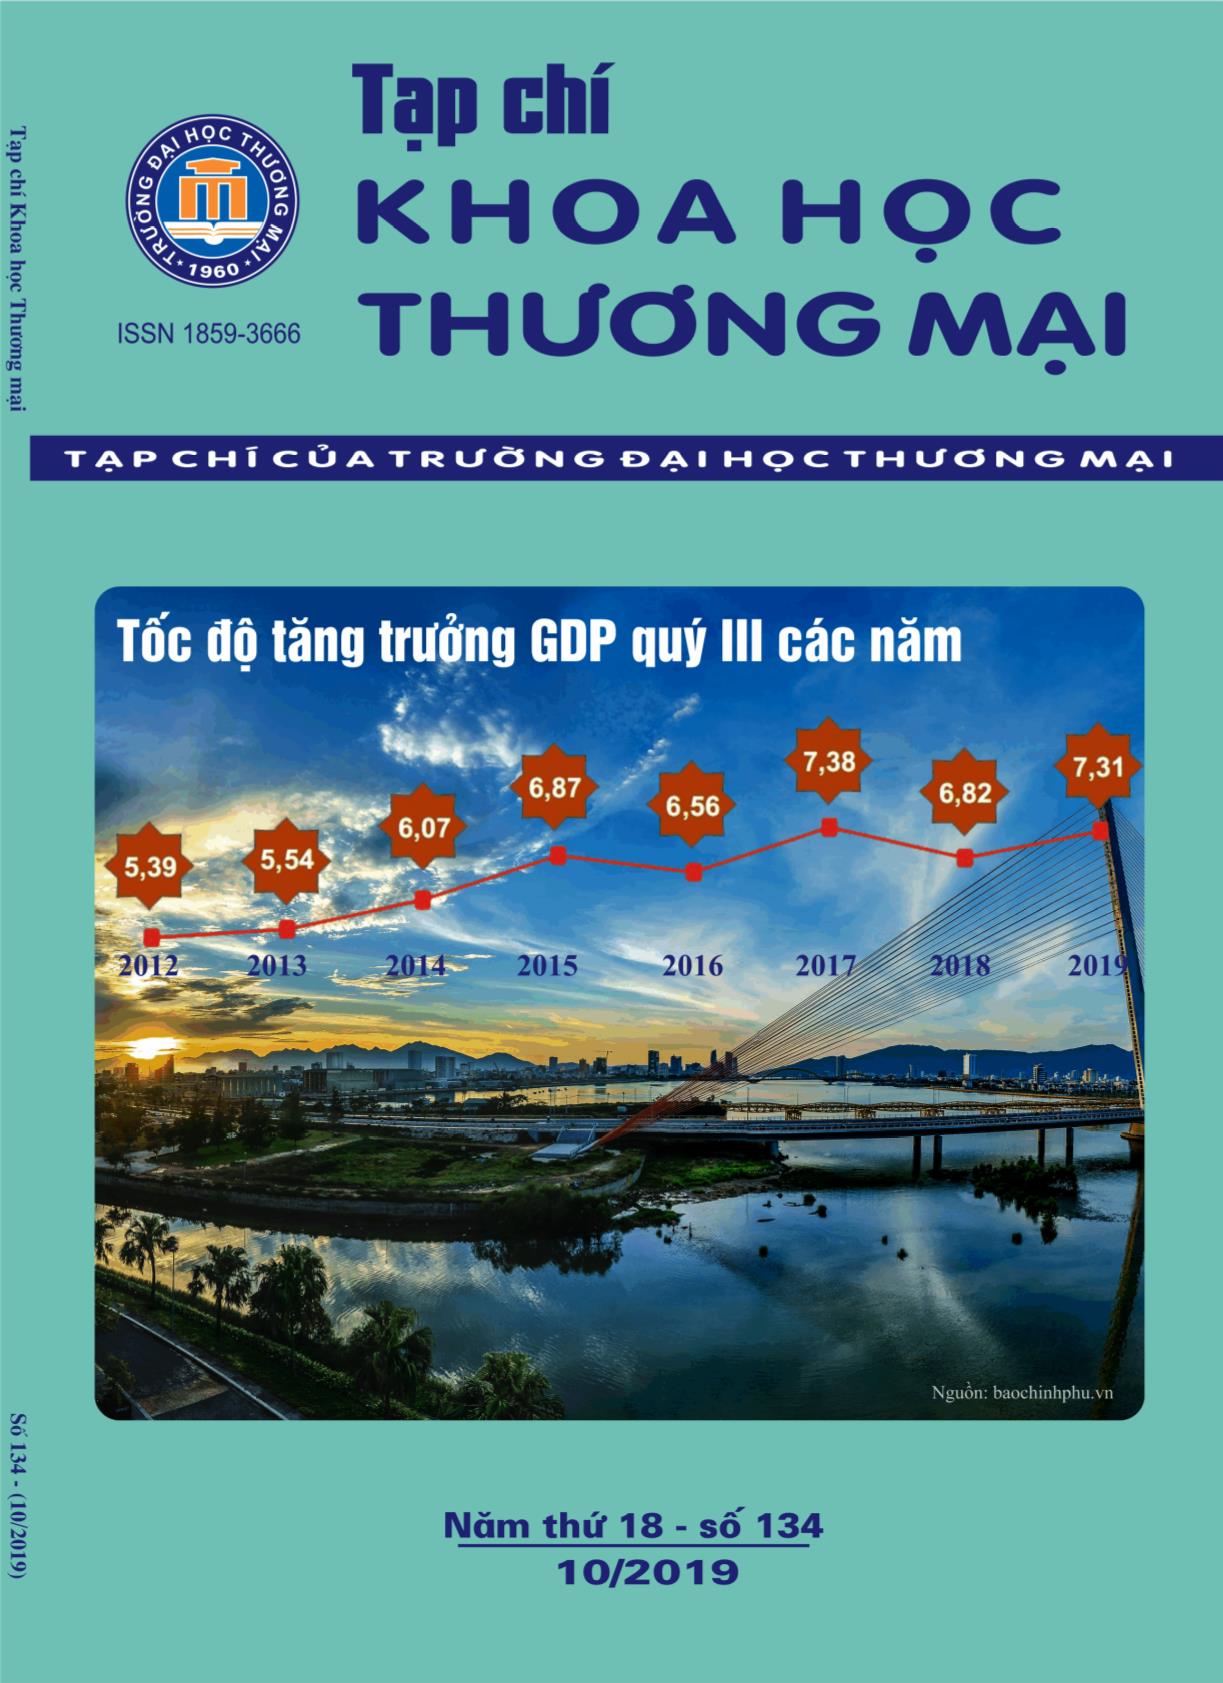 Các nhân tố tác động đến ý định sử dụng thương mại di động tại Việt Nam